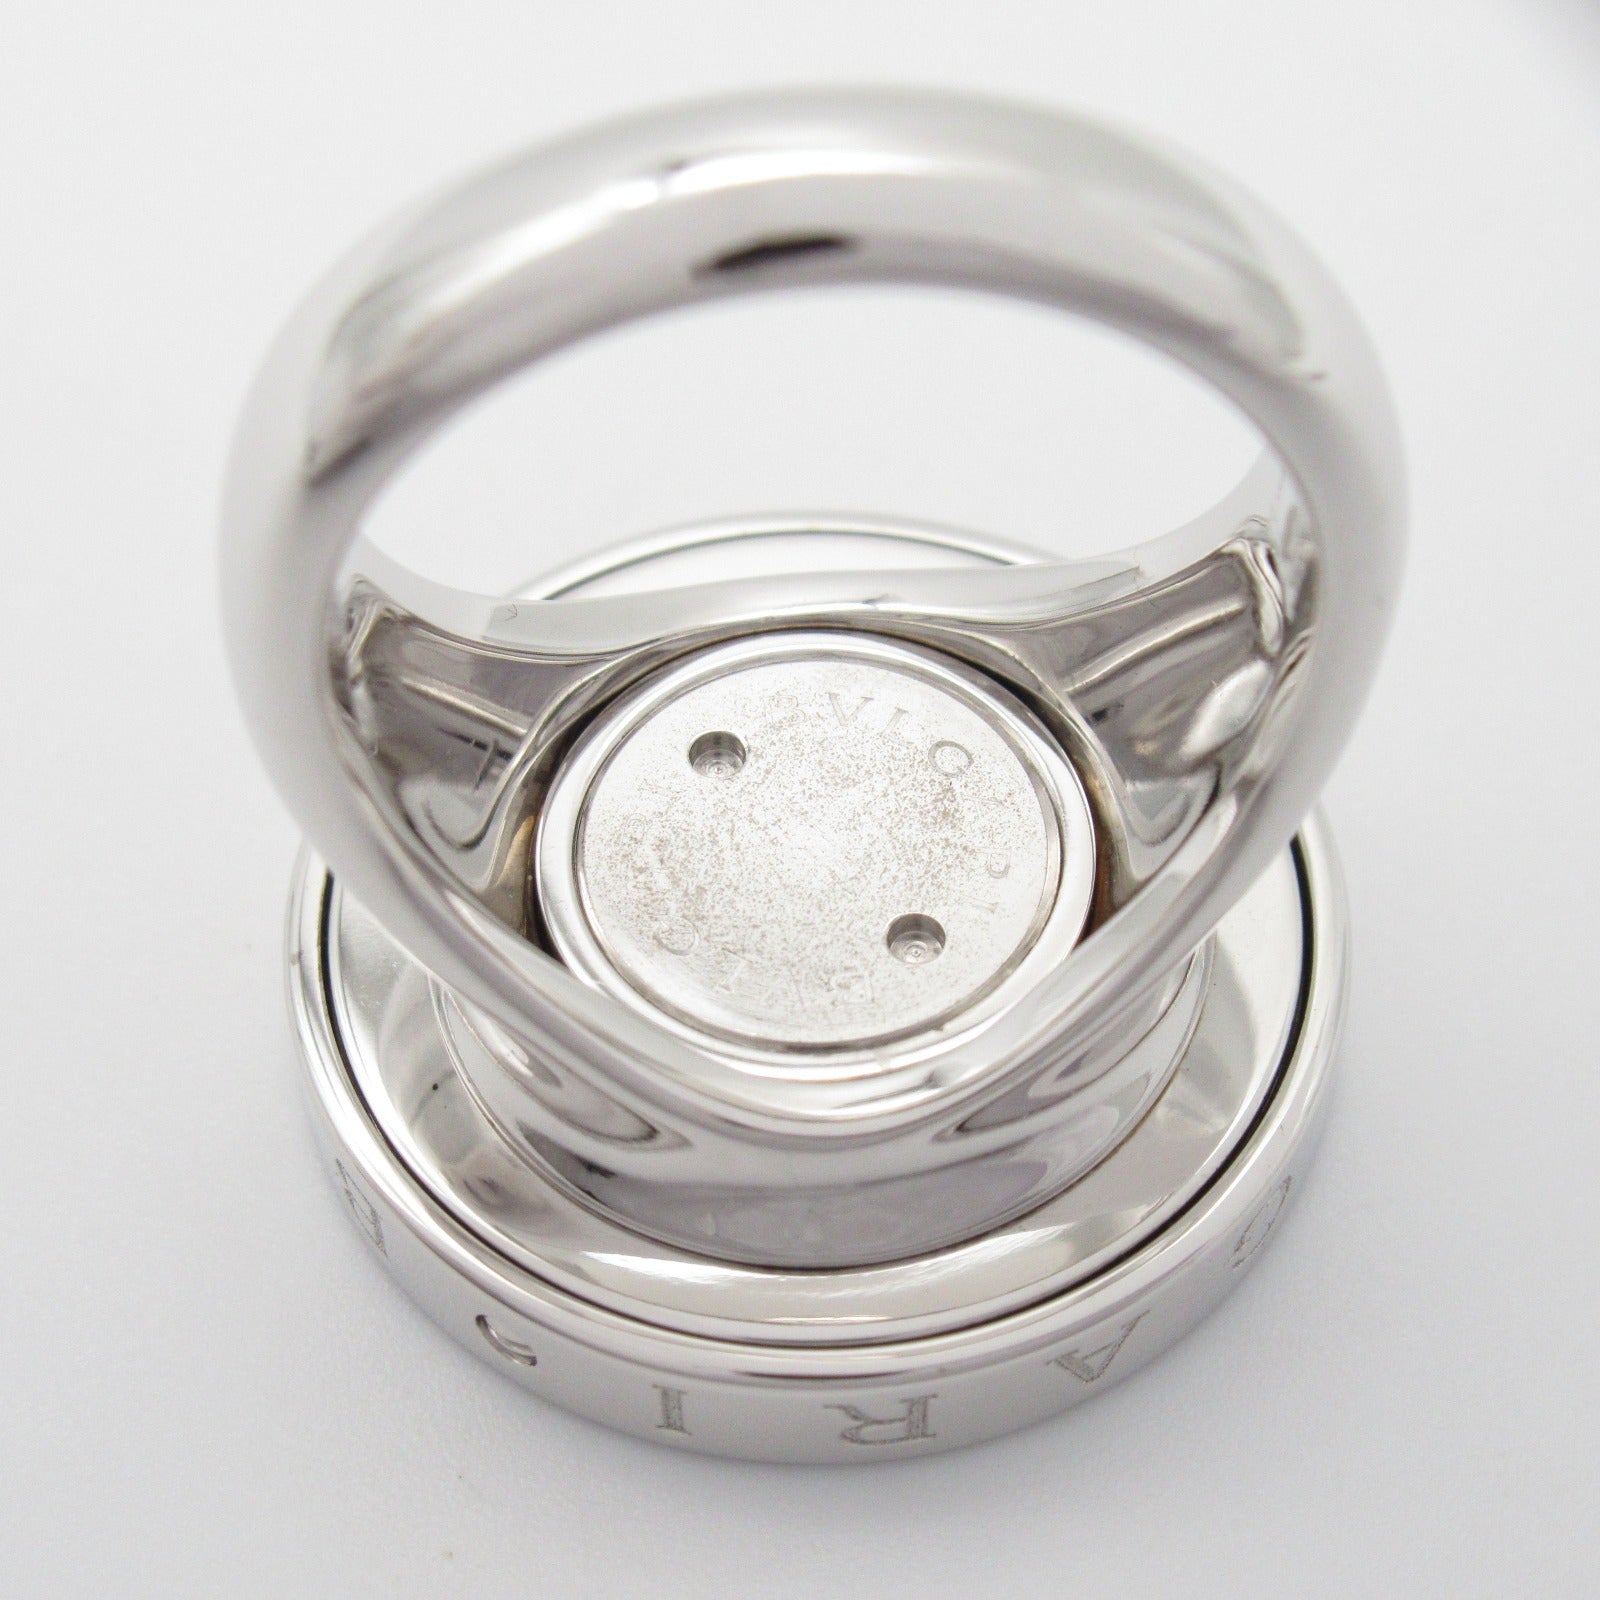 Bulgari BVLGARI Optical Onyx Ring Ring Ring Jewelry K18WG (White G) Stainless Steel Onyx   Black Close-up